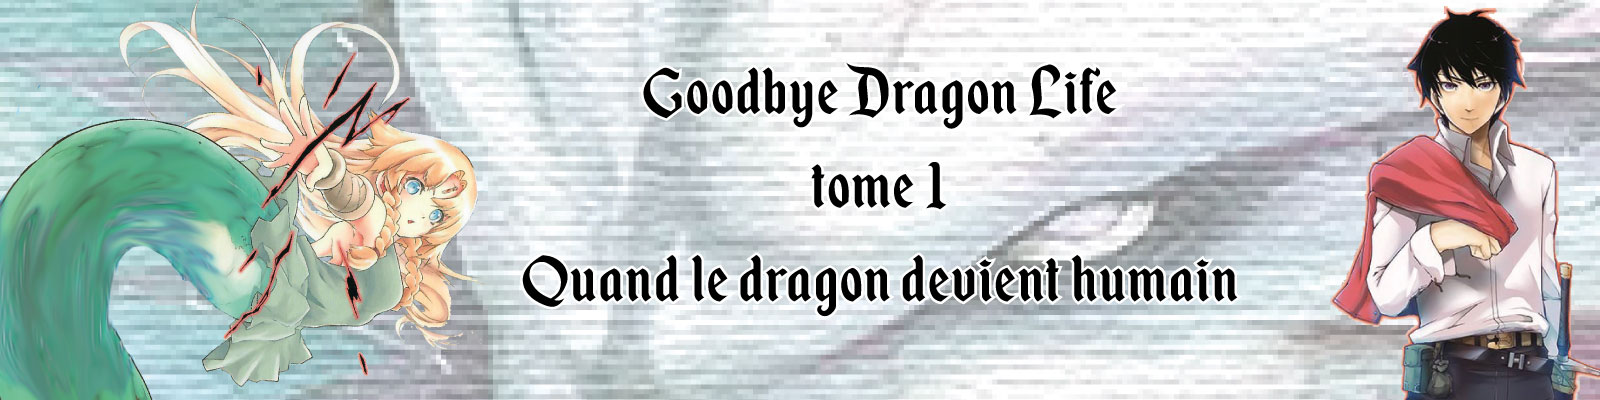 Goodbye Dragon Life